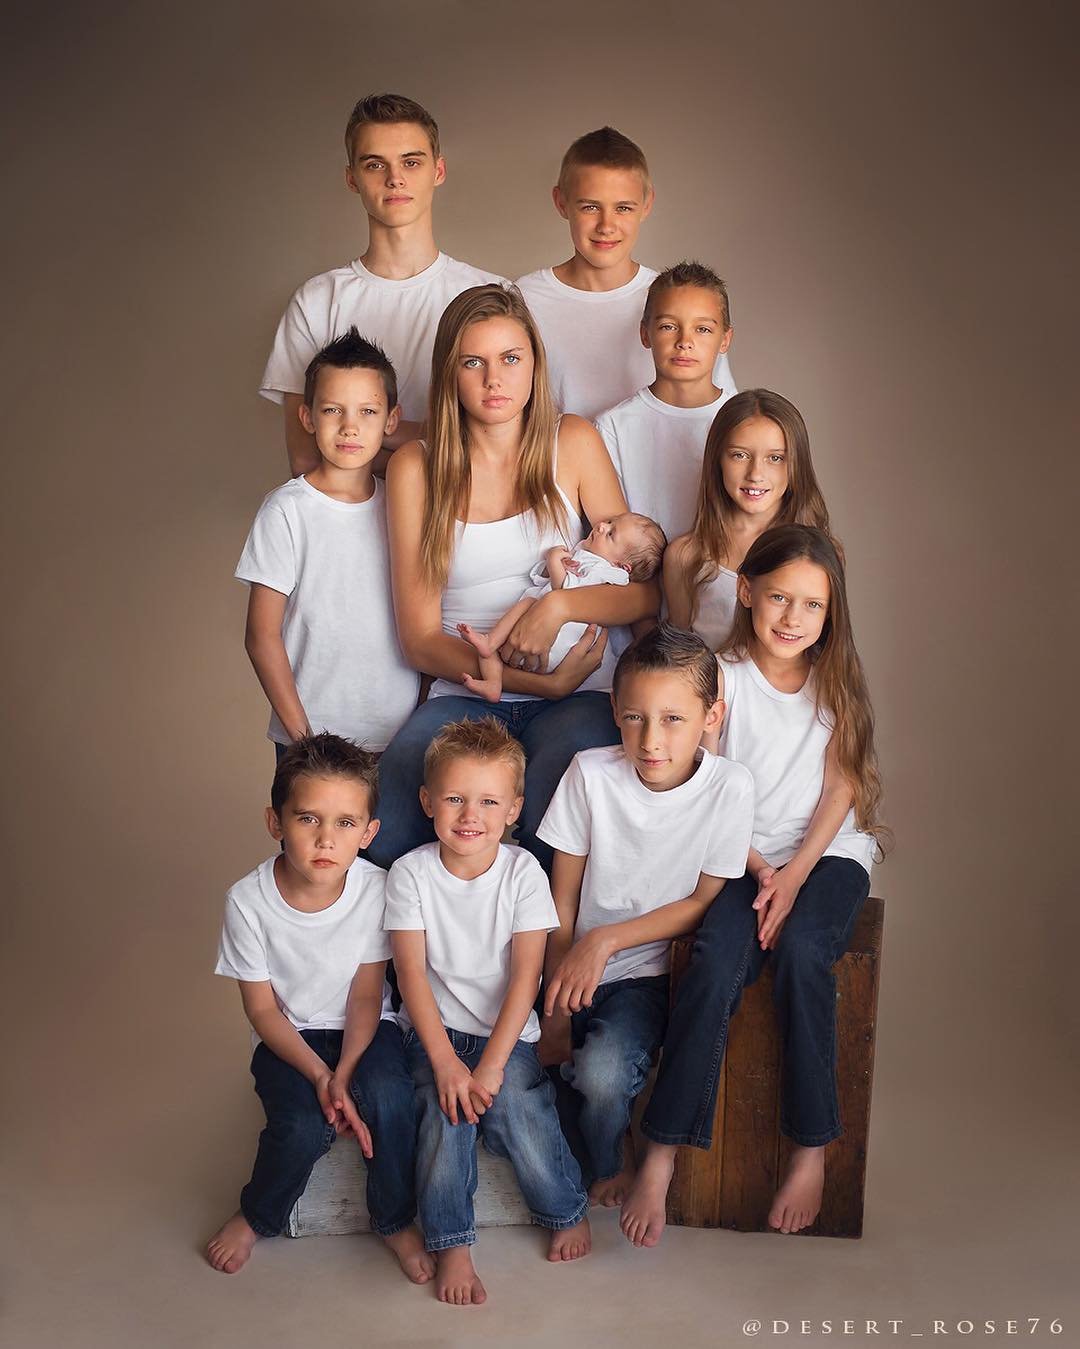 Жизнь в одном кадре — мама из США сделала гениальный снимок всех 11 детей